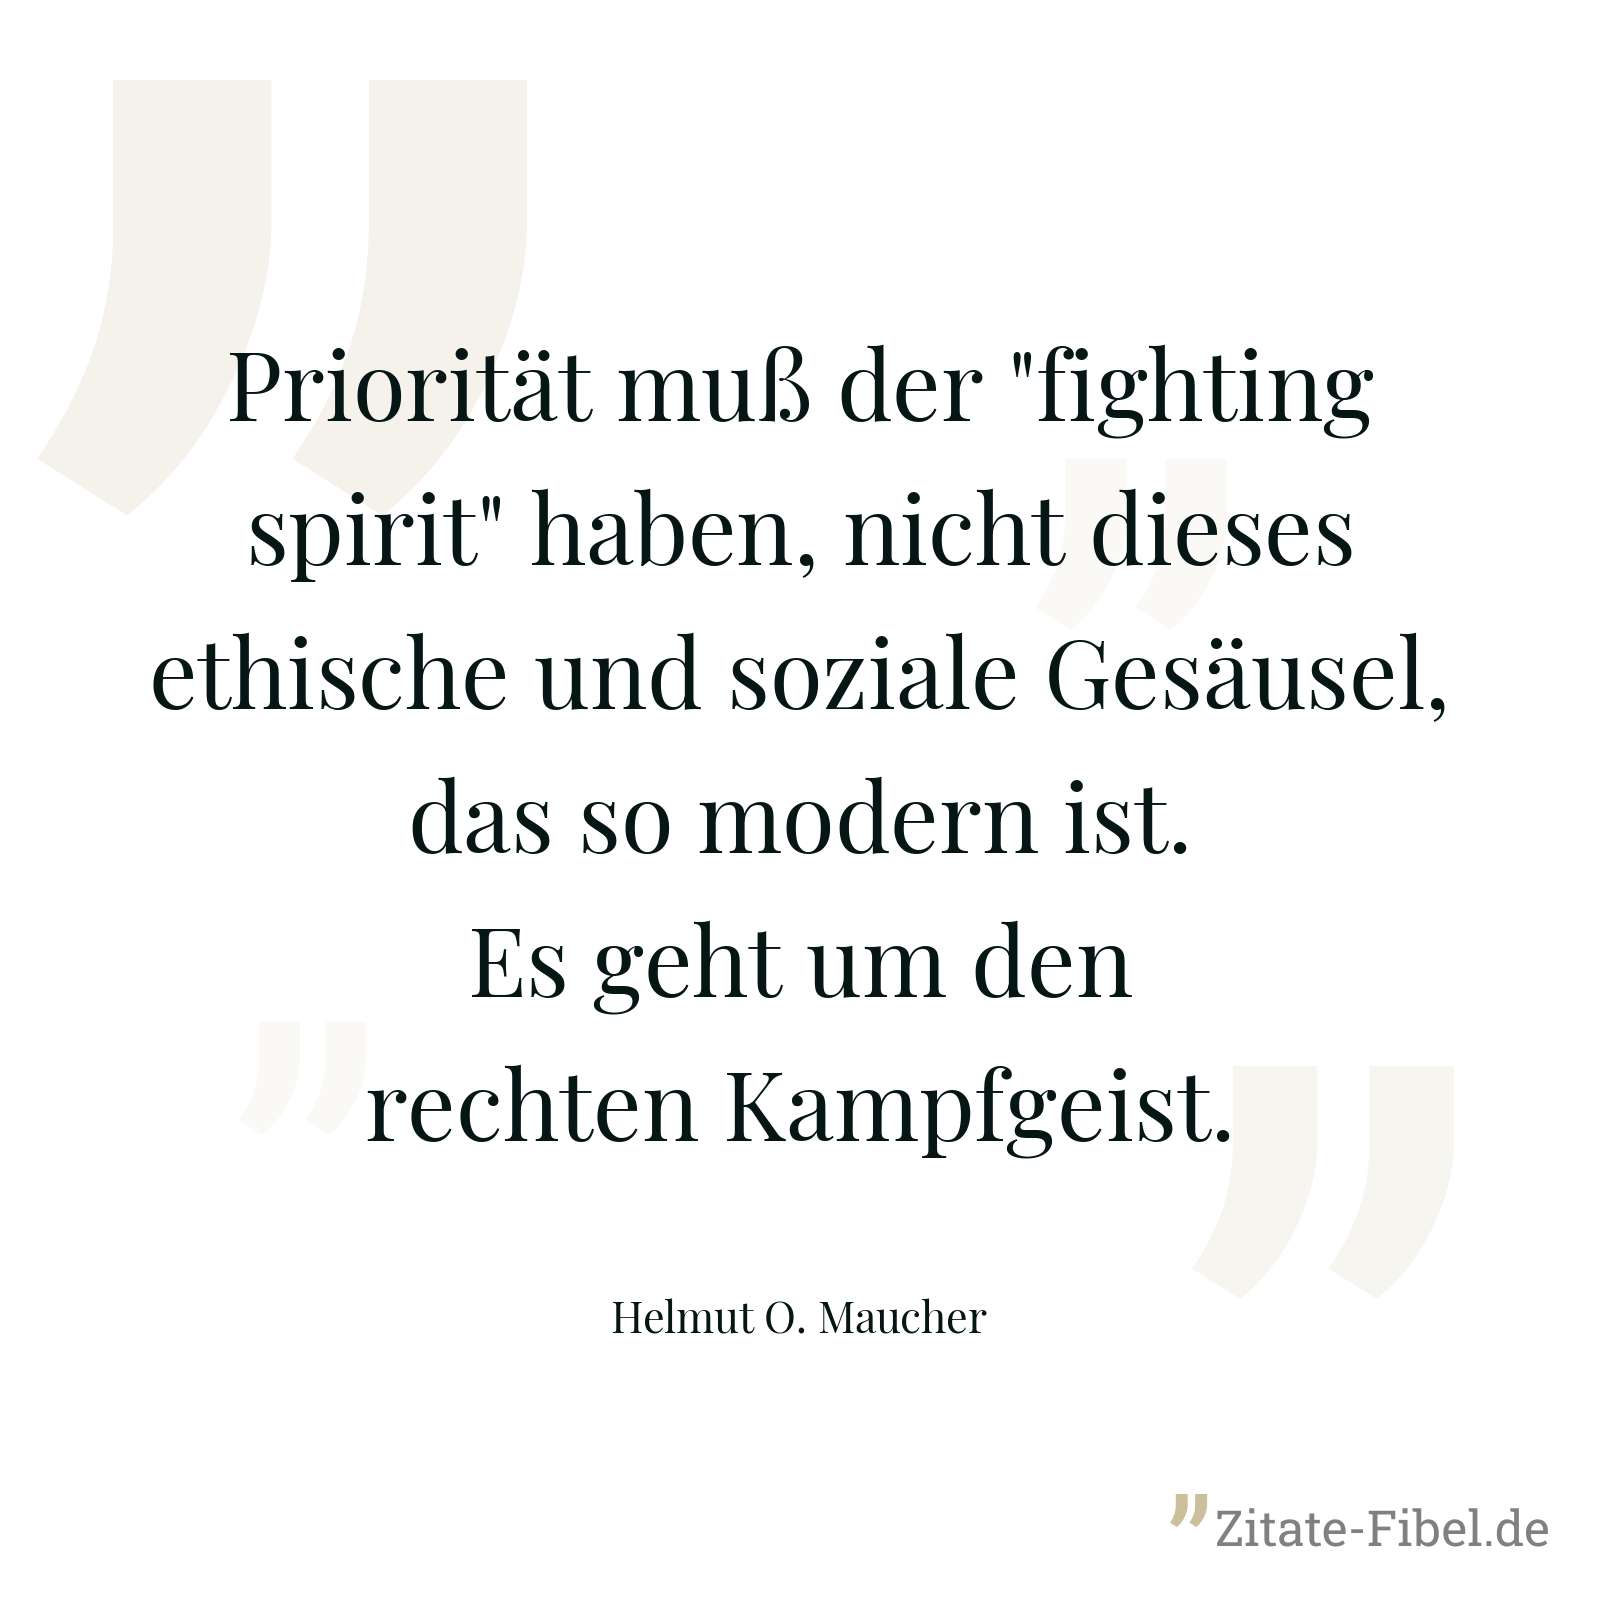 Priorität muß der "fighting spirit" haben, nicht dieses ethische und soziale Gesäusel, das so modern ist. Es geht um den rechten Kampfgeist. - Helmut O. Maucher